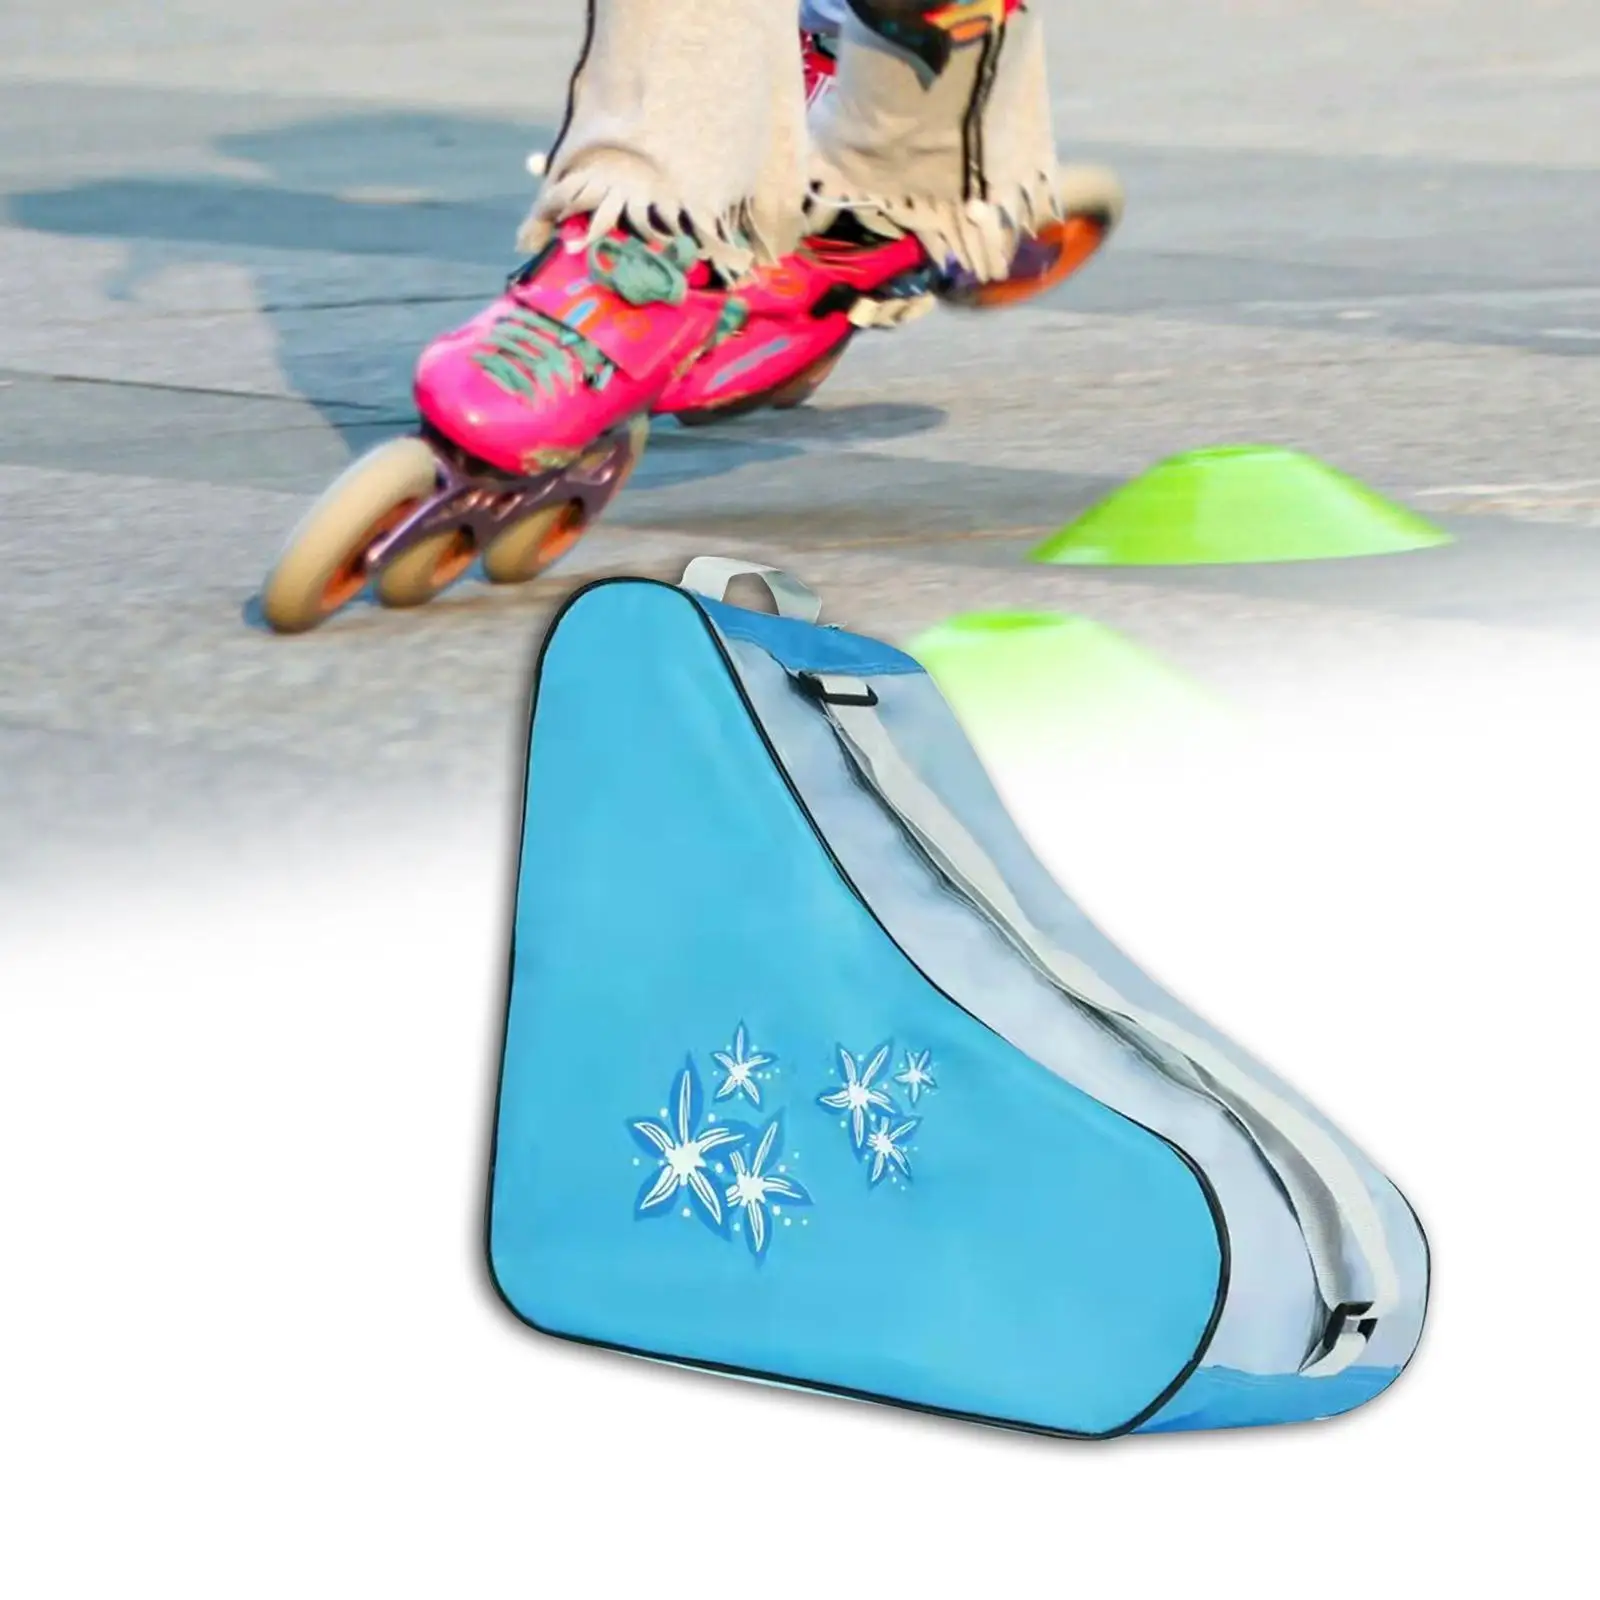 Roller Skate Bag Portable Adjustable Shoulder Strap Adults Kids Skate Carry Bag for Quad Skates Ice Hockey Skate Figure Skates